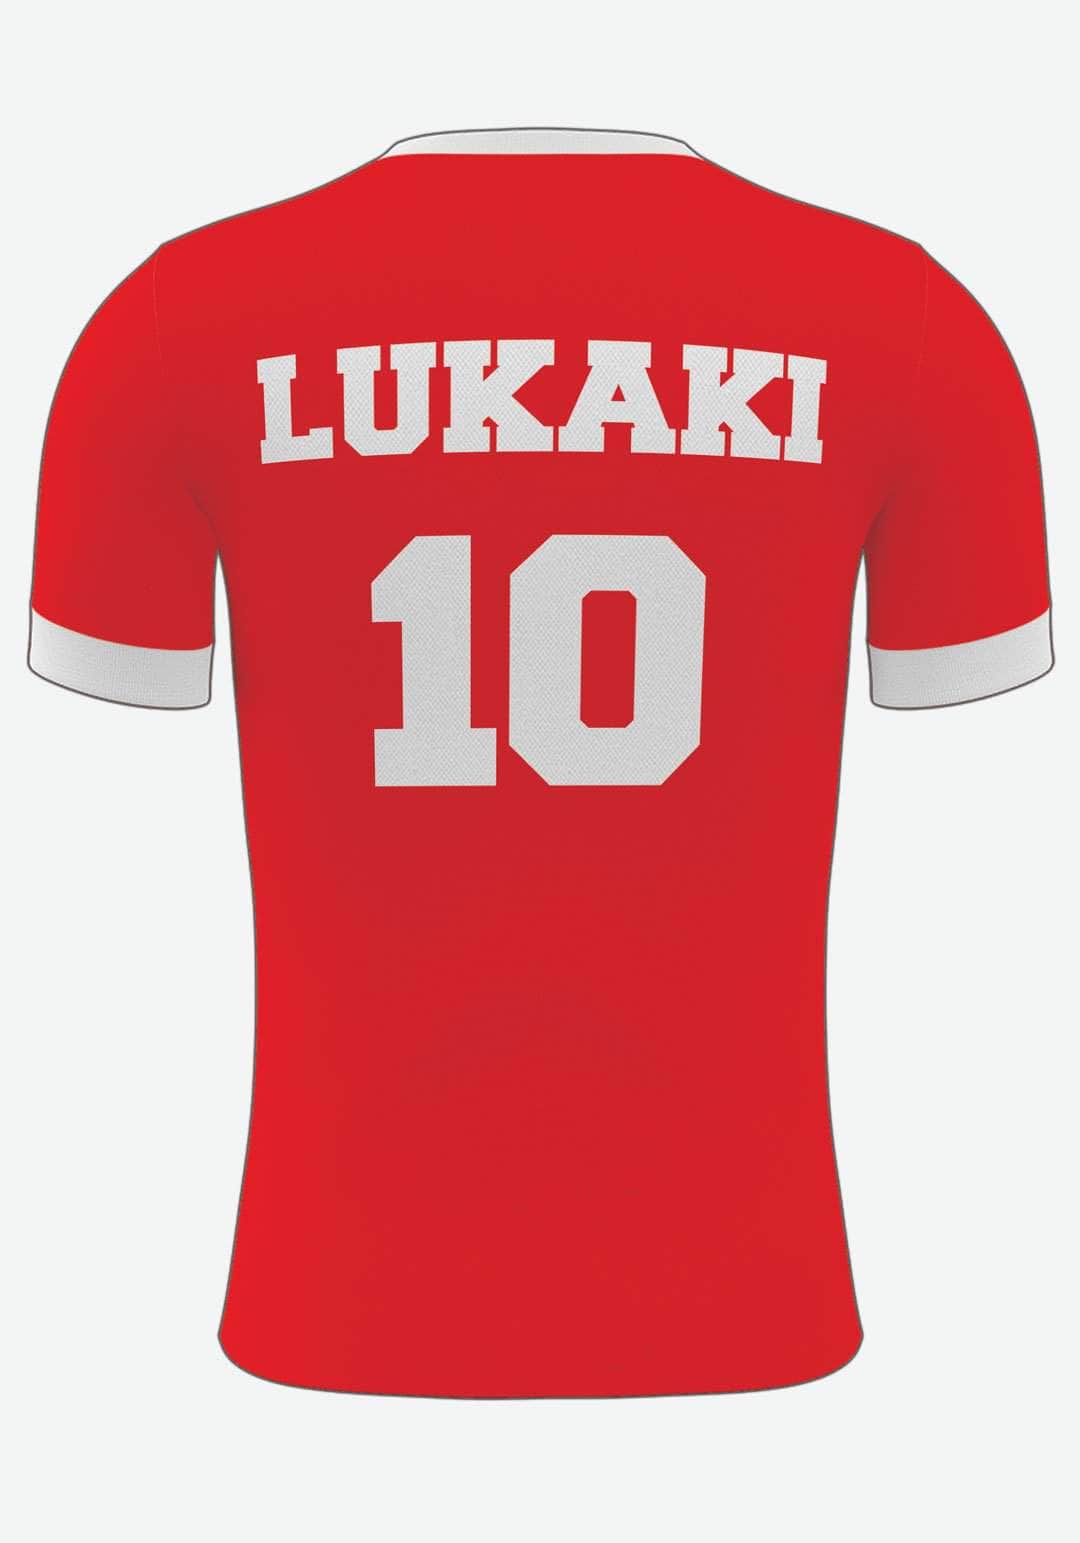 Se Manchester U. Fodboldplakat - med eget navn og nummer, 21x30 hos Lukaki.dk